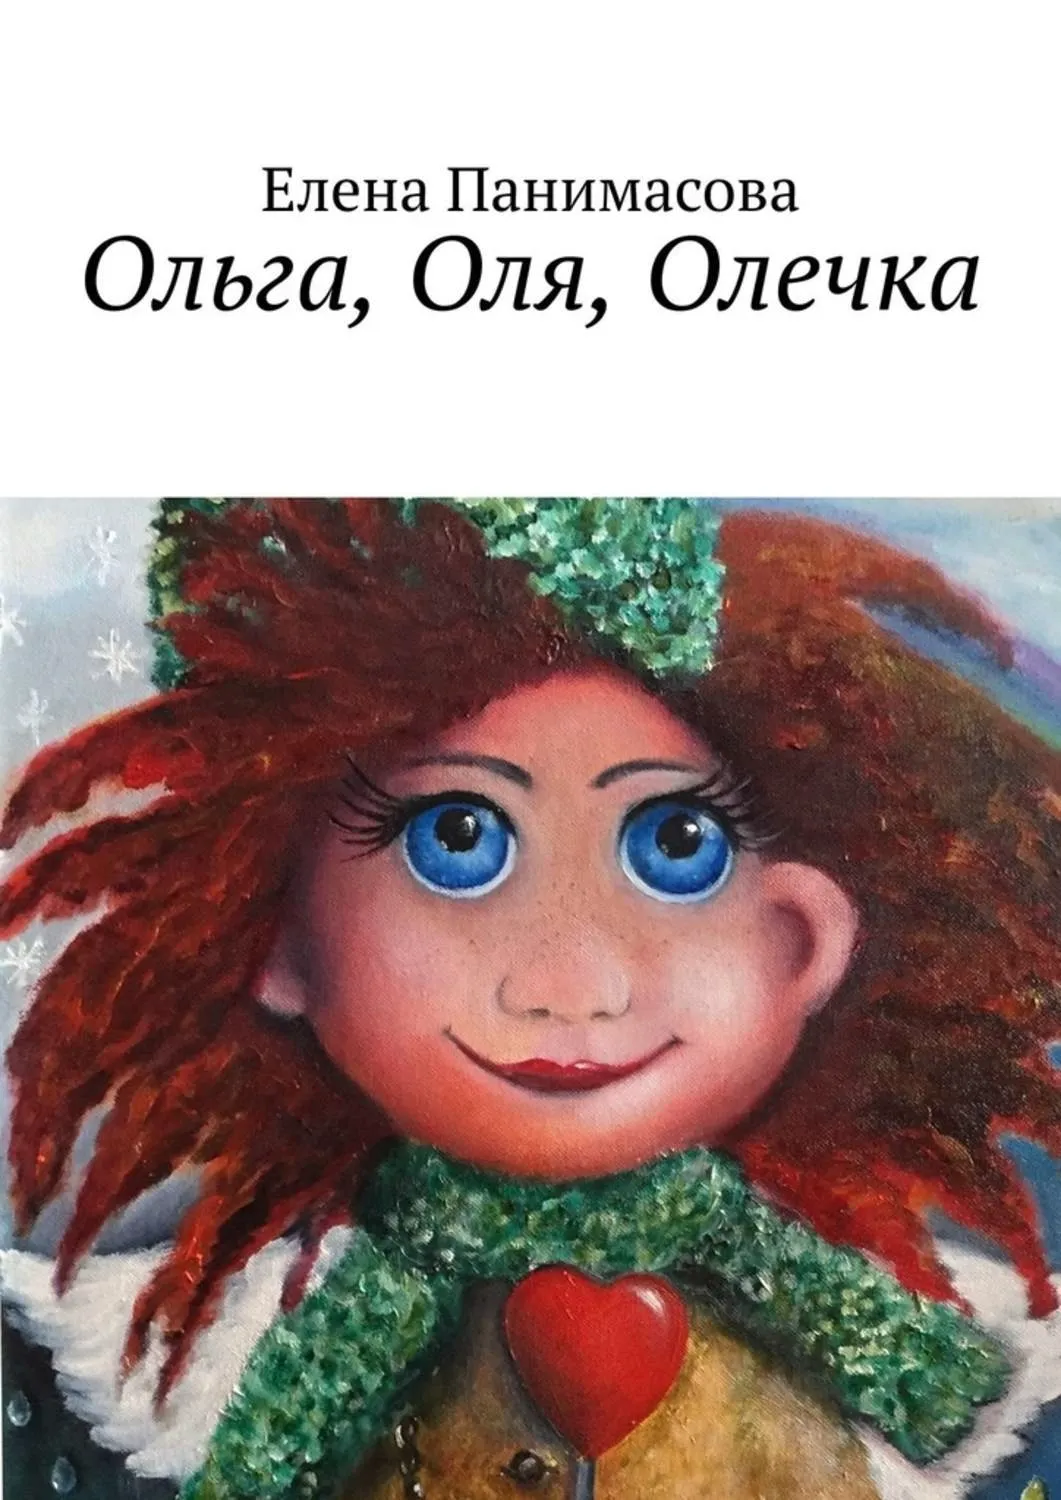 Оля Олечка